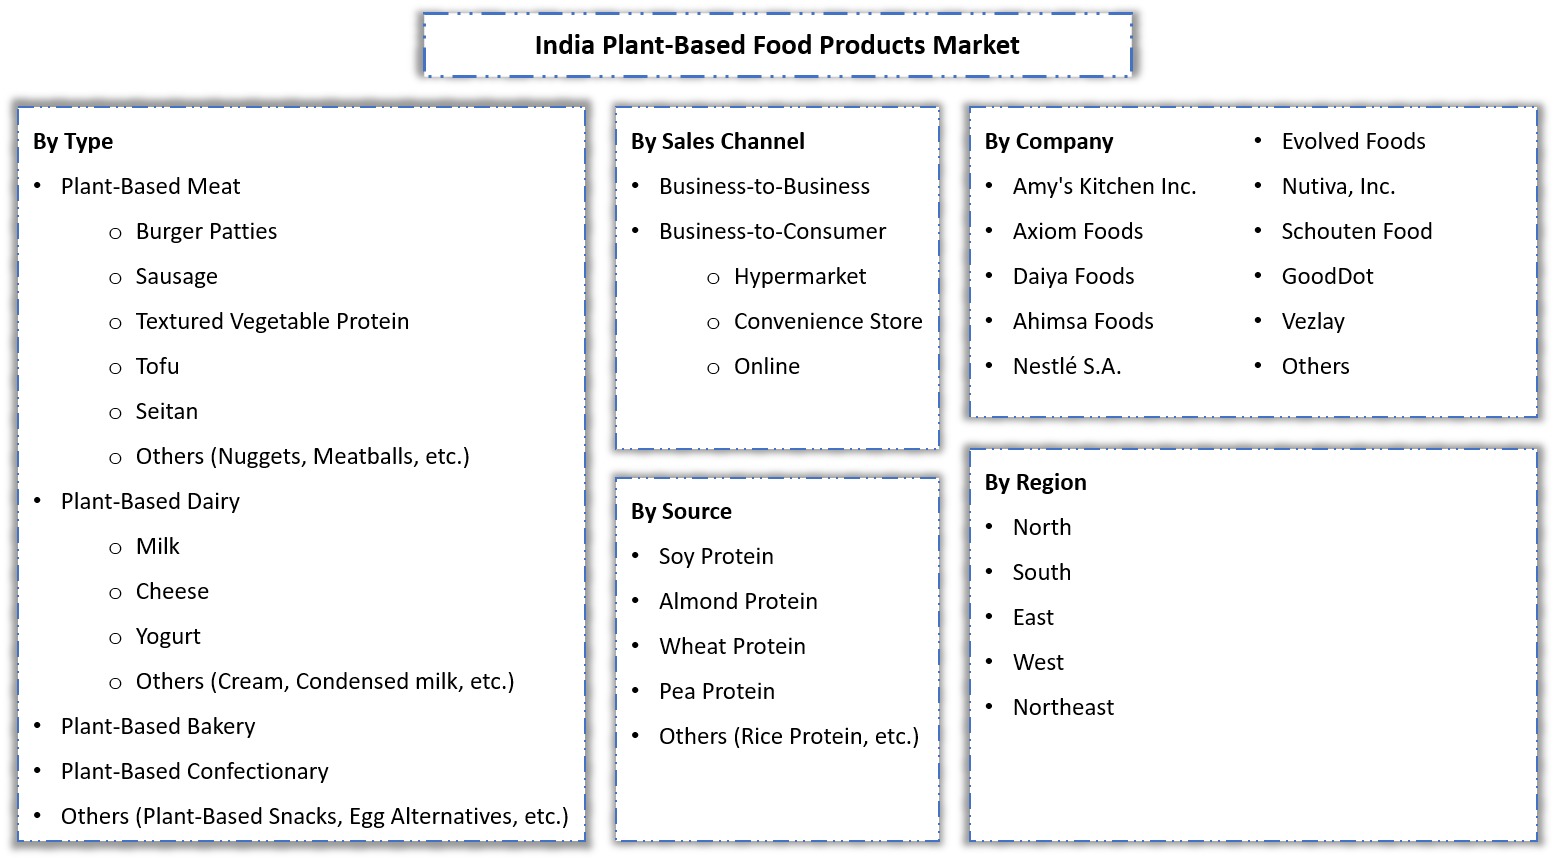 India Plant-Based Food Products Market Segmentation